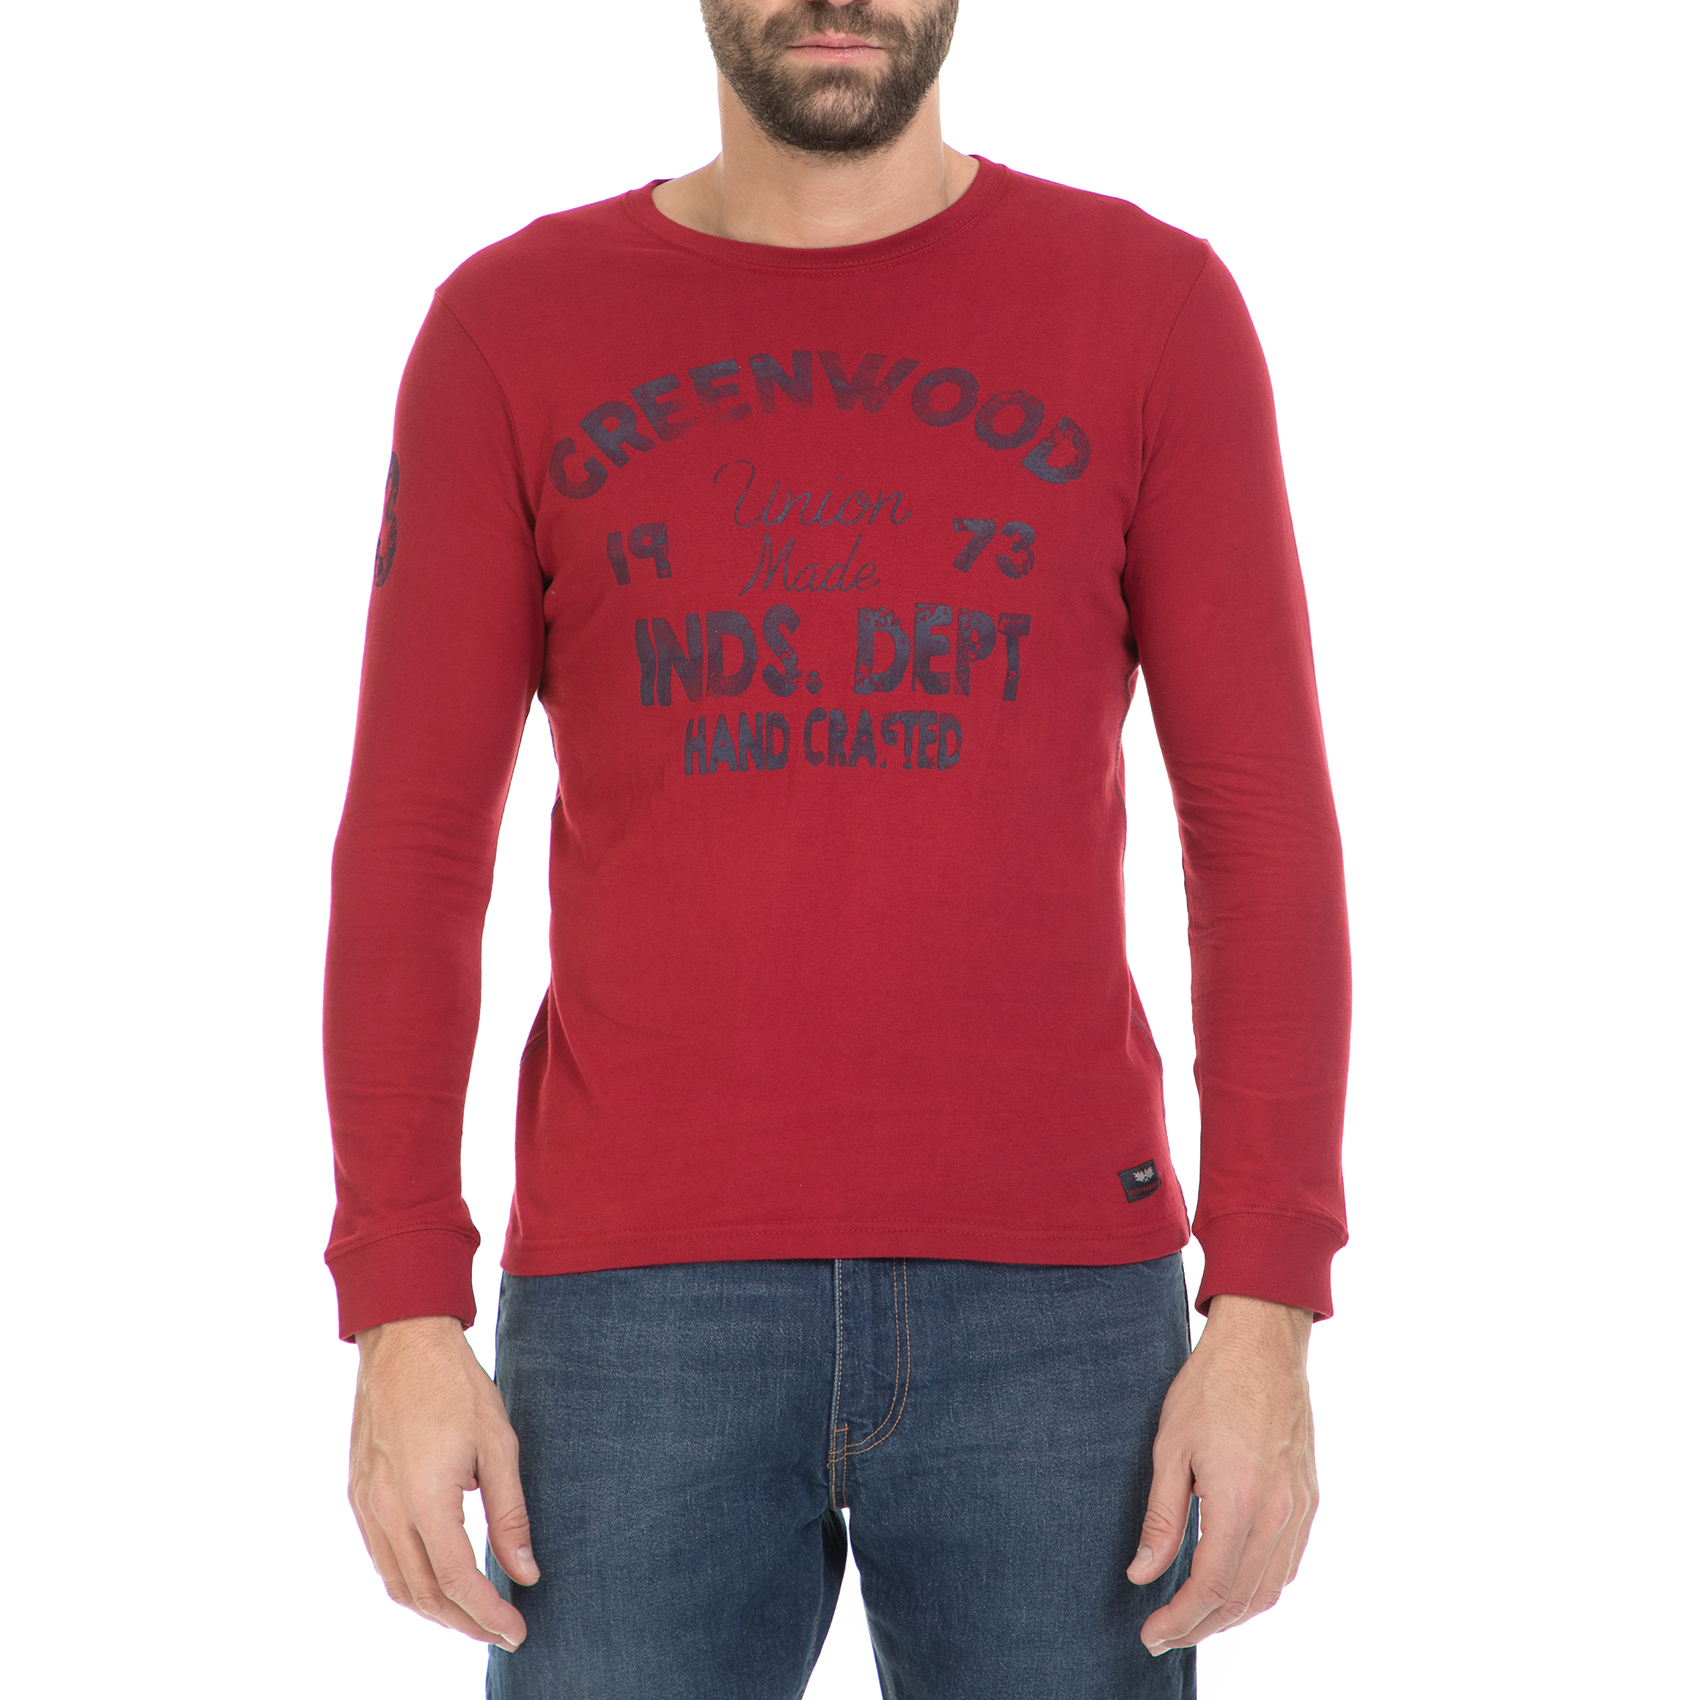 Ανδρικά/Ρούχα/Μπλούζες/Μακρυμάνικες GREENWOOD - Ανδρική μπλούζα GREENWOOD κόκκινη